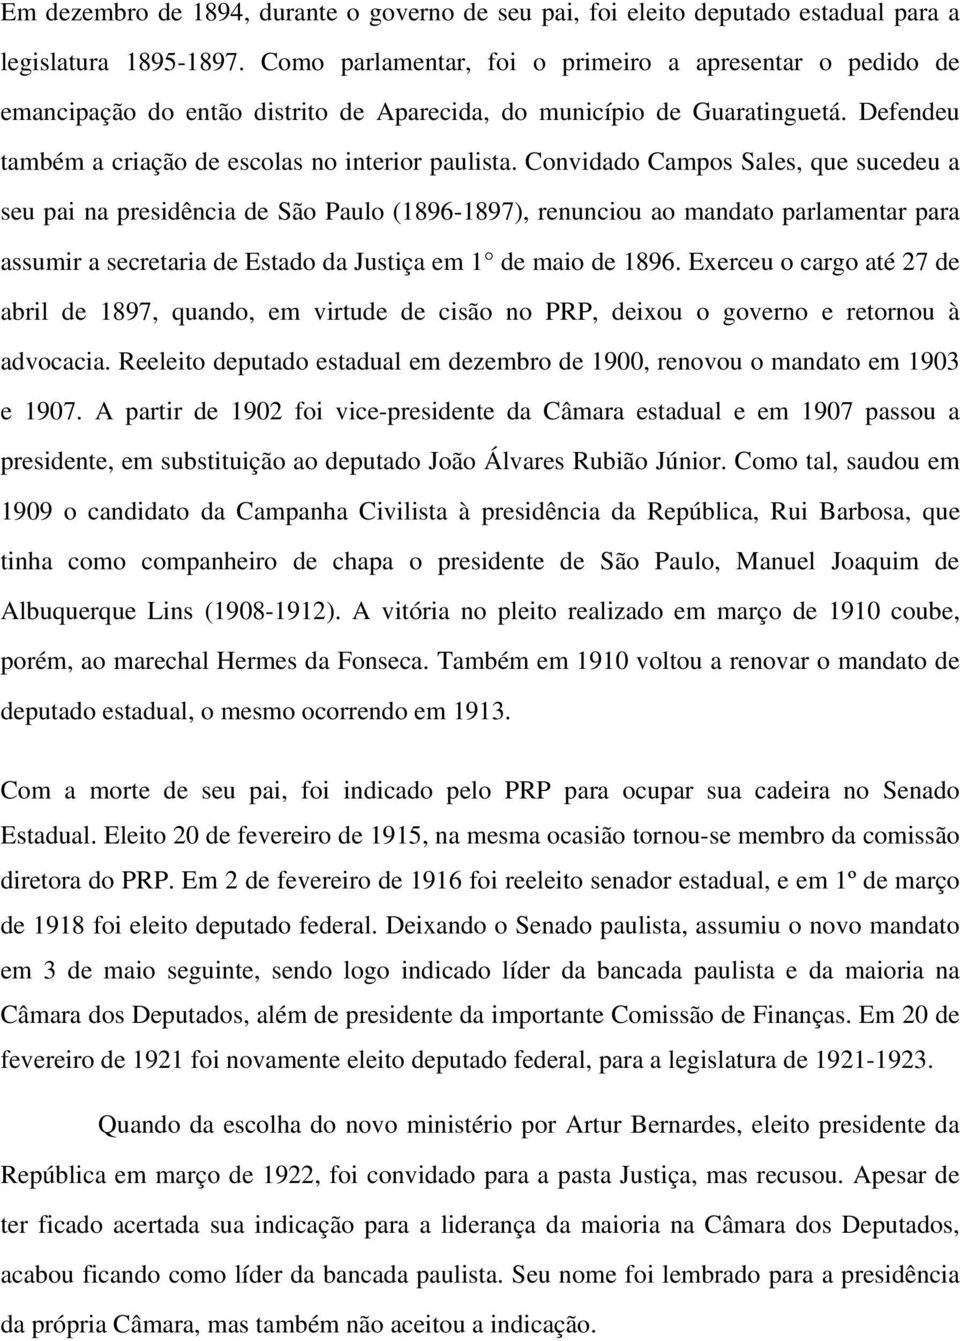 Convidado Campos Sales, que sucedeu a seu pai na presidência de São Paulo (1896-1897), renunciou ao mandato parlamentar para assumir a secretaria de Estado da Justiça em 1 de maio de 1896.